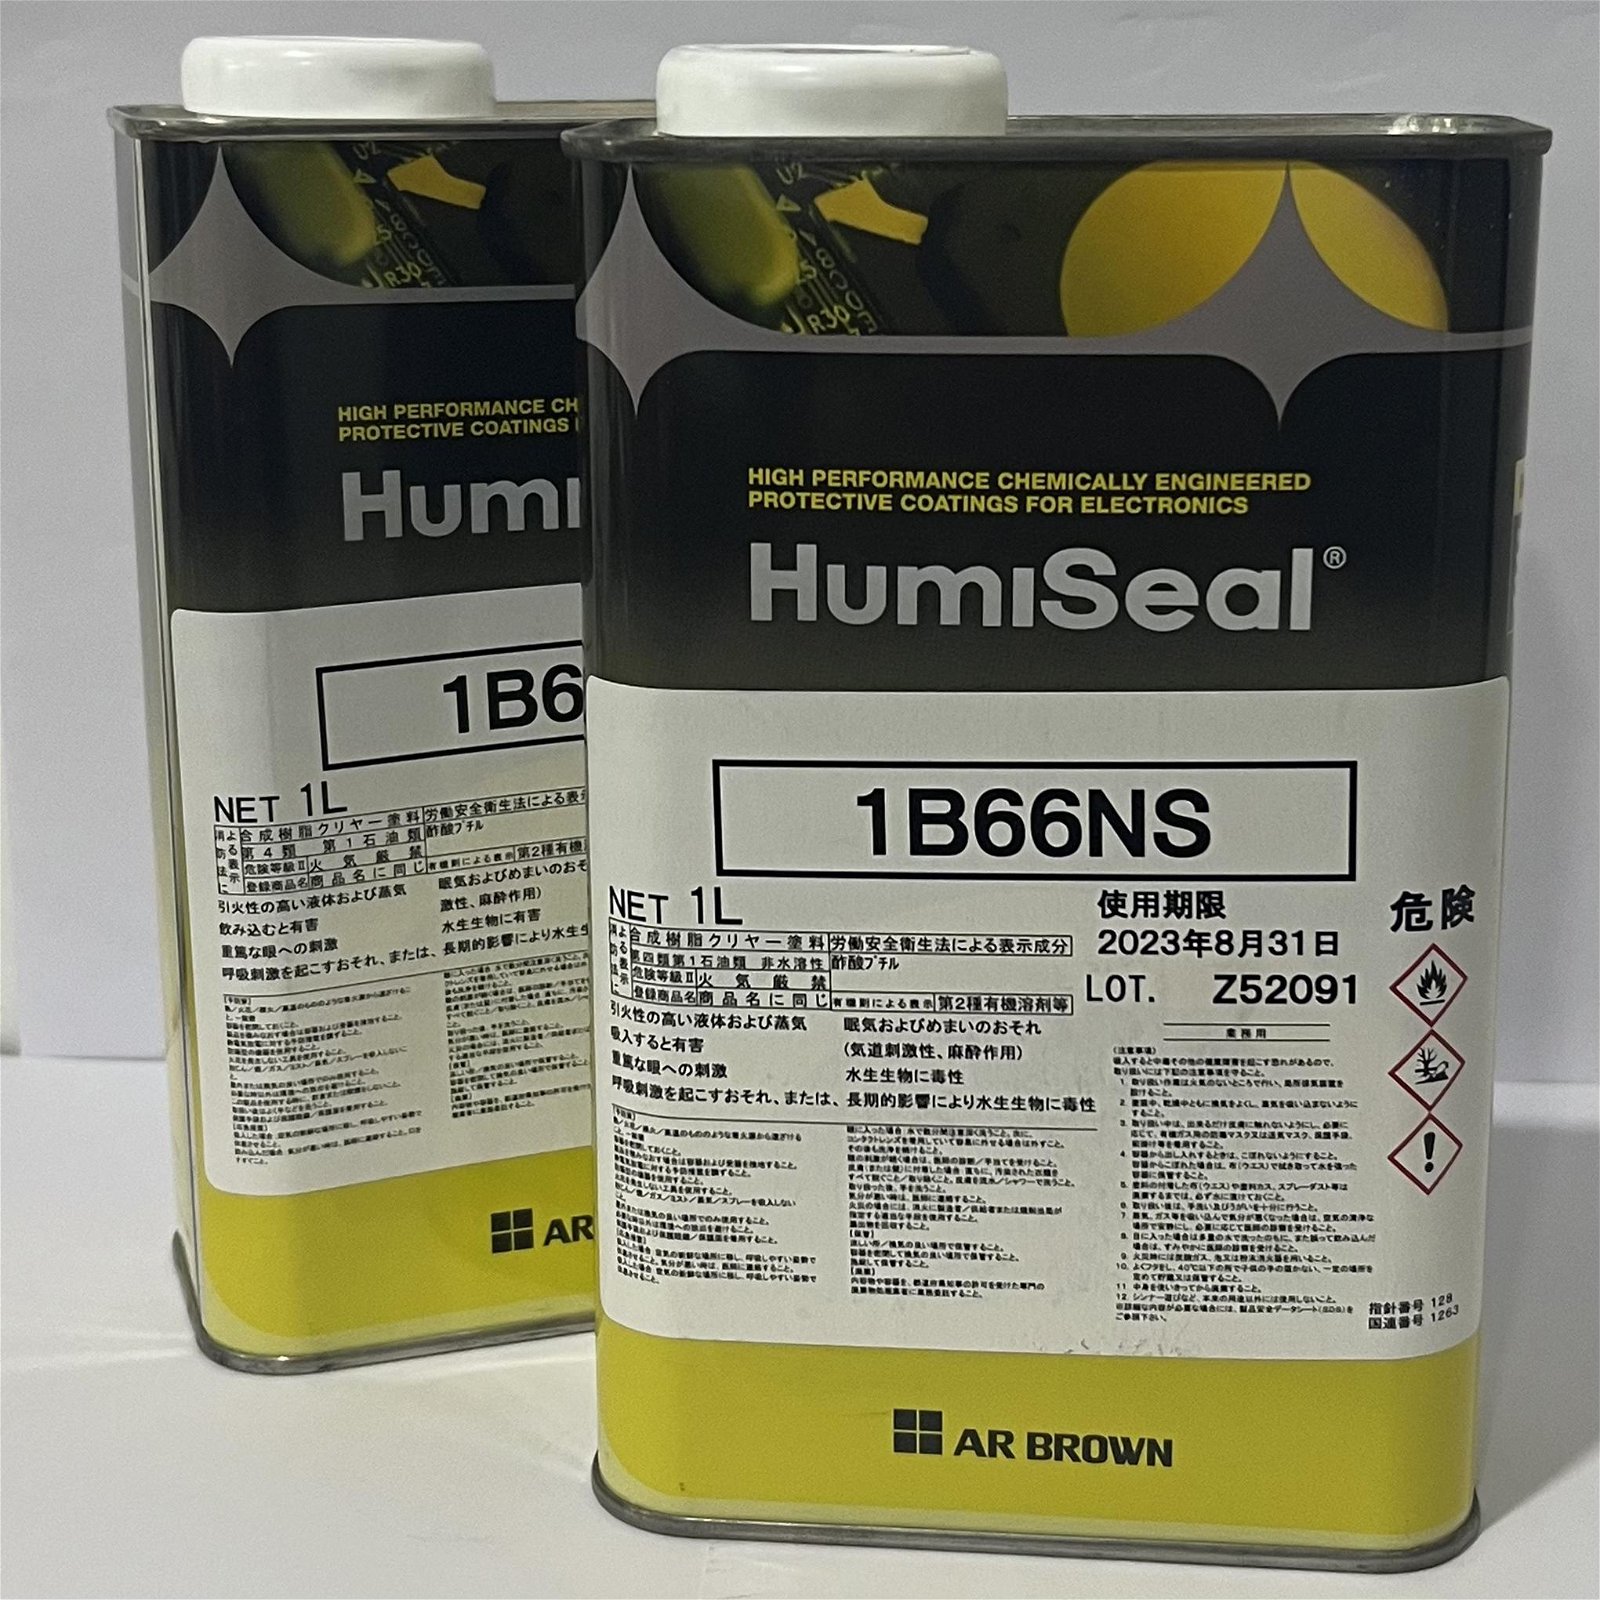 HumiSeal 1B66NS 三防漆，防湿剂，防潮漆、披覆胶、三防涂料 2